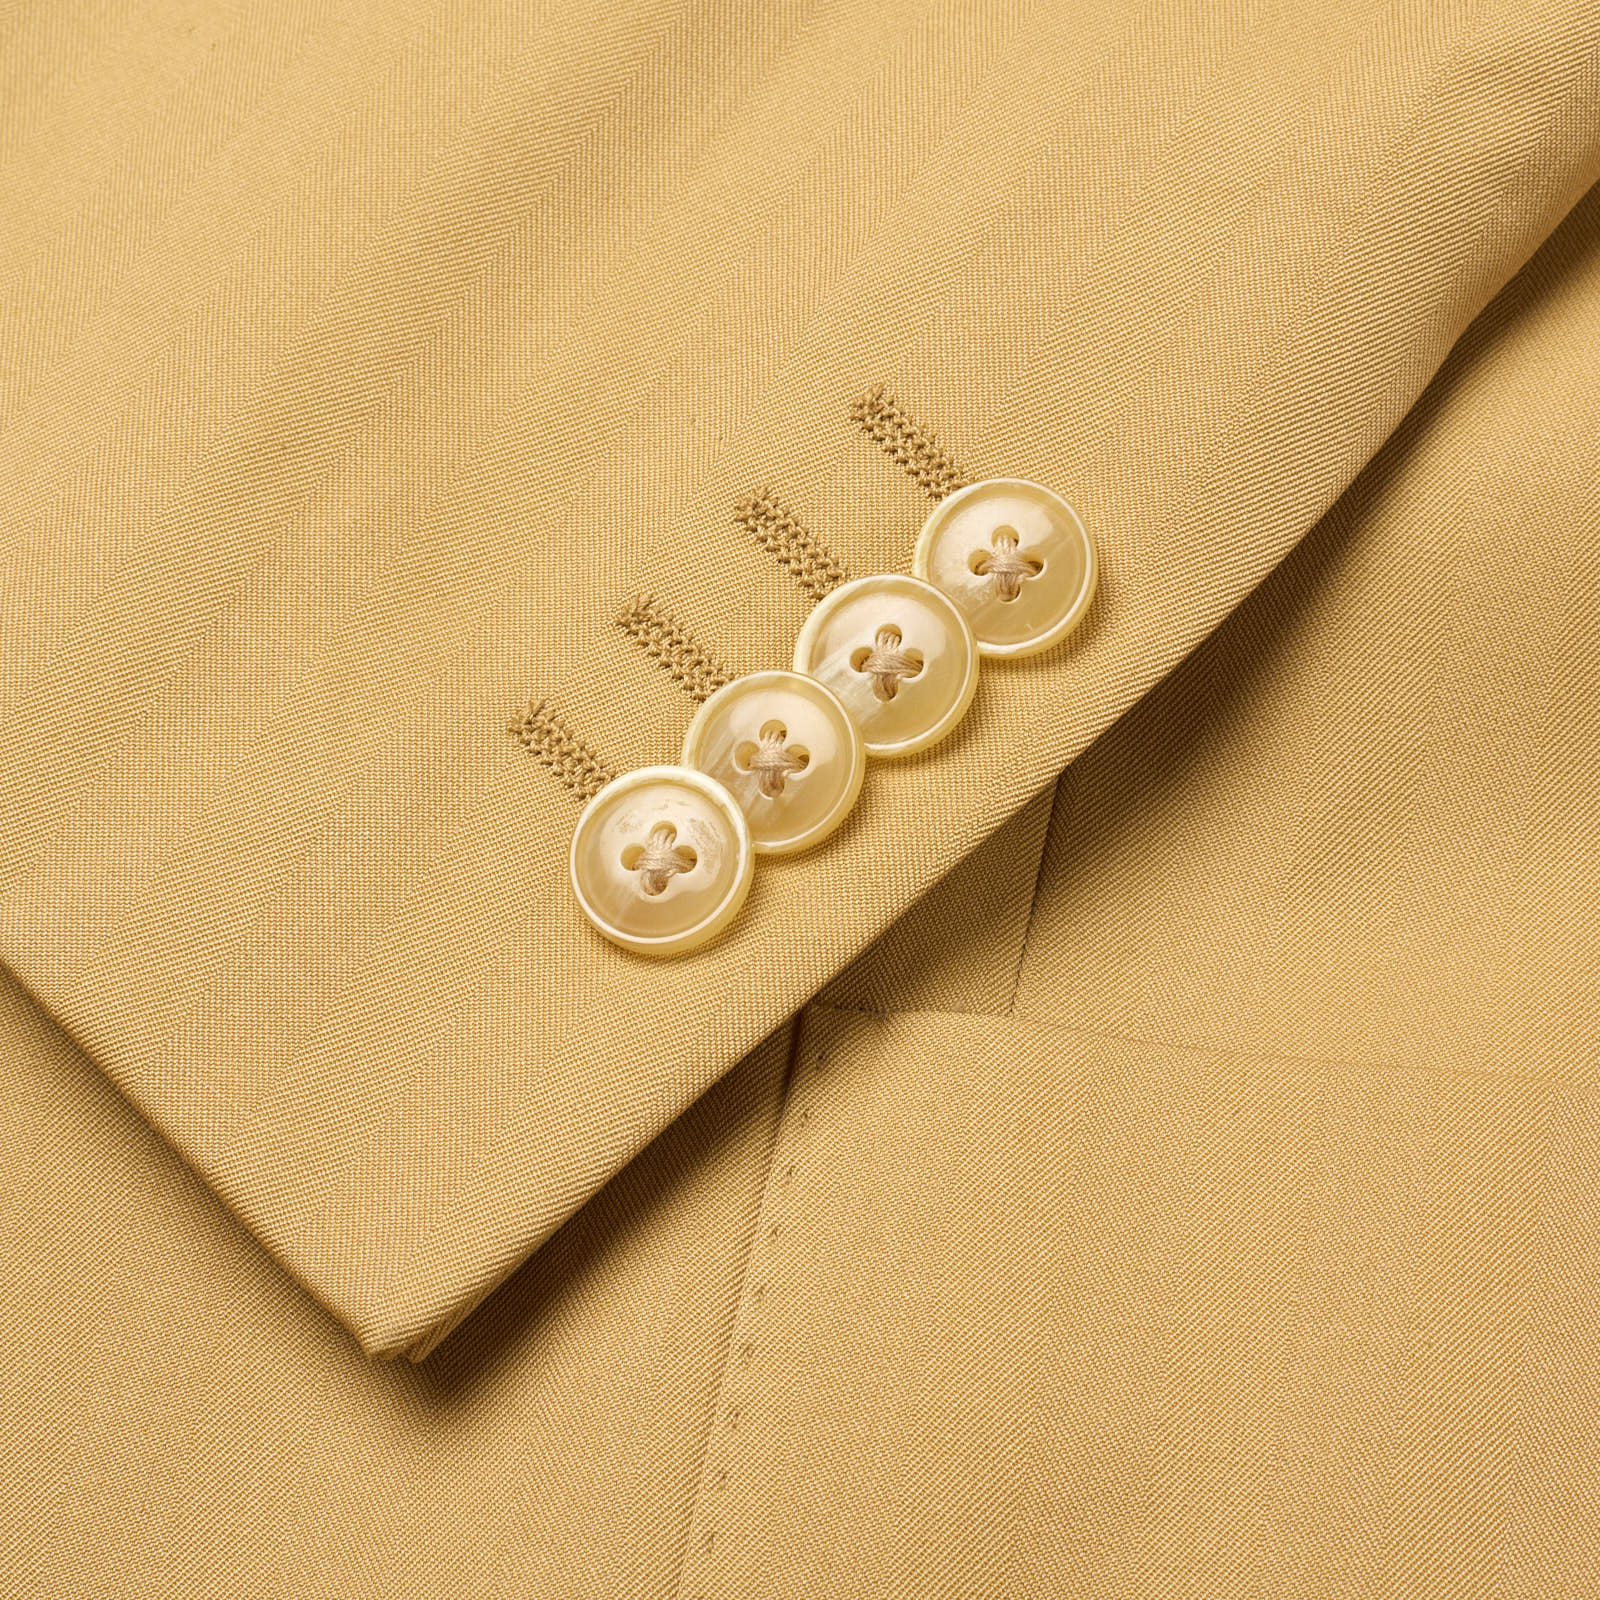 VANNUCCI Milano Tan Herringbone Cotton Spring-Summer Suit EU 50 NEW US 40